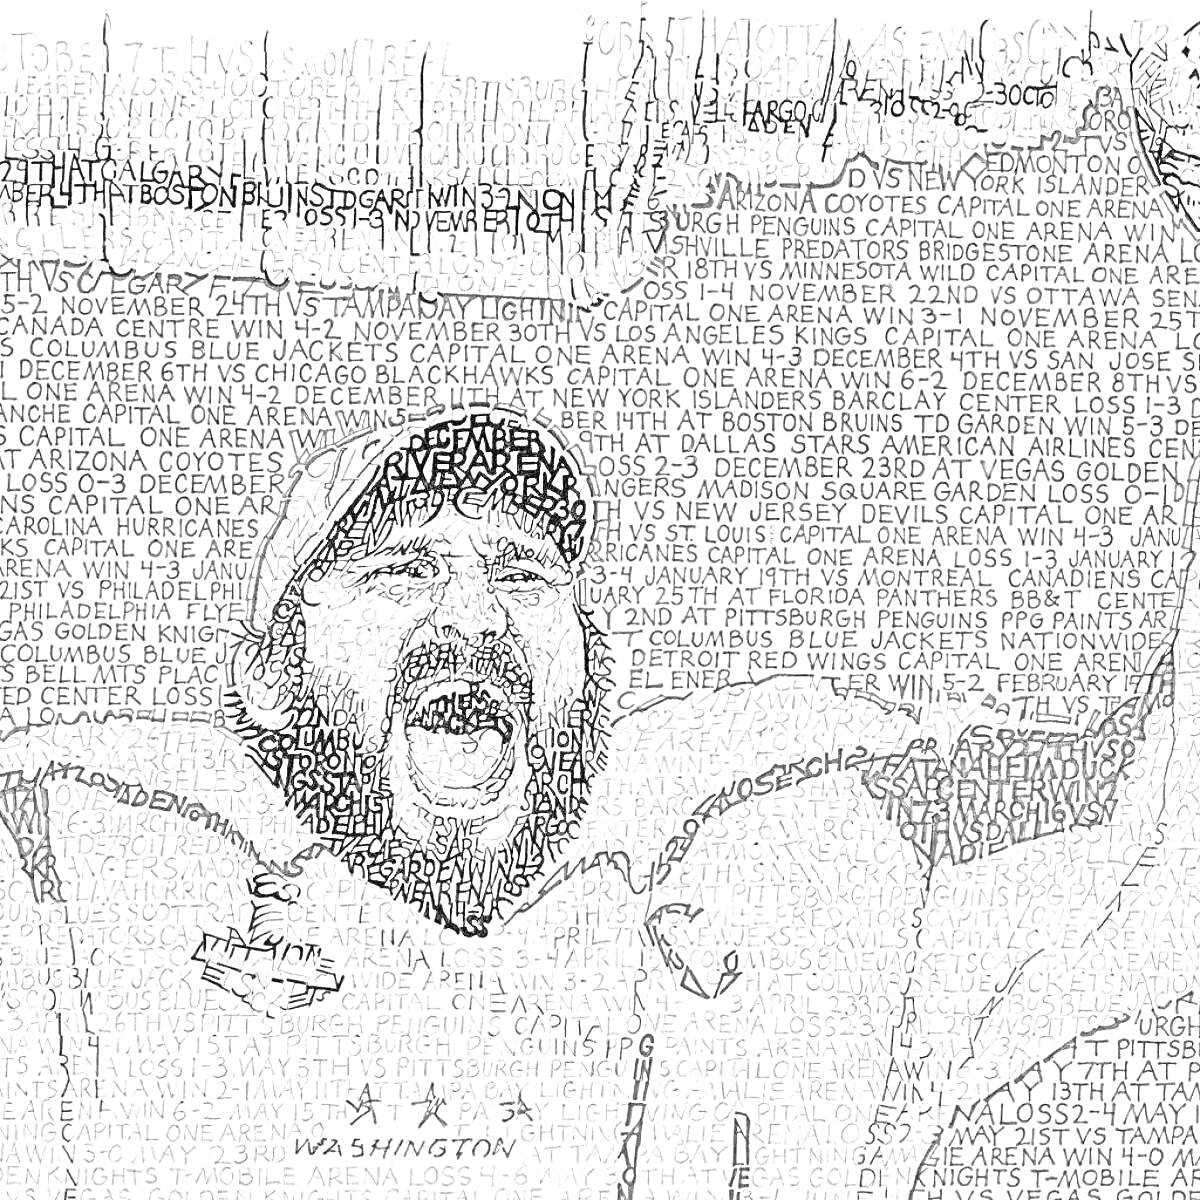 Раскраска Раскраска с изображением хоккеиста с бородой и кепкой, кричащего с поднятыми руками, на фоне состоящем из слов